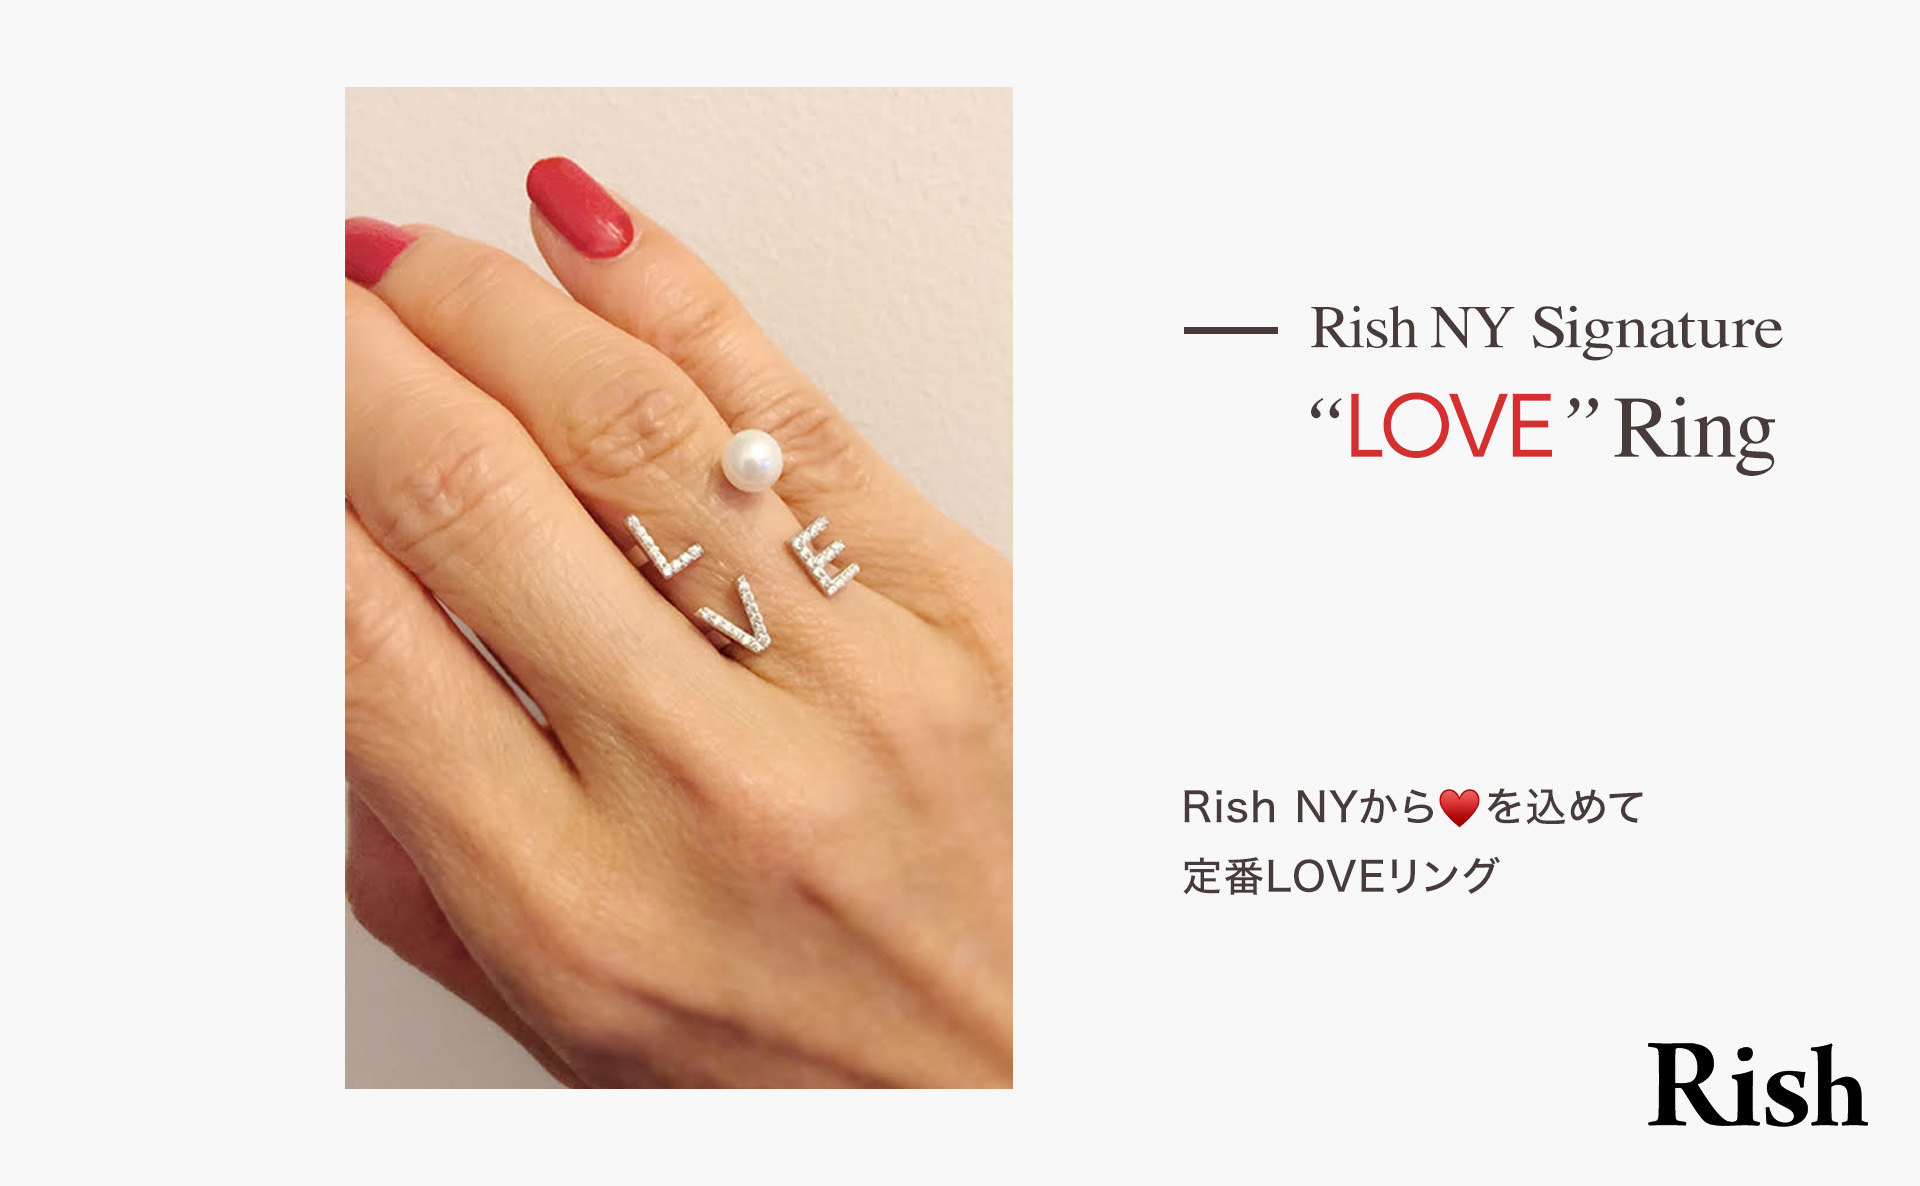 Rish NY love ring